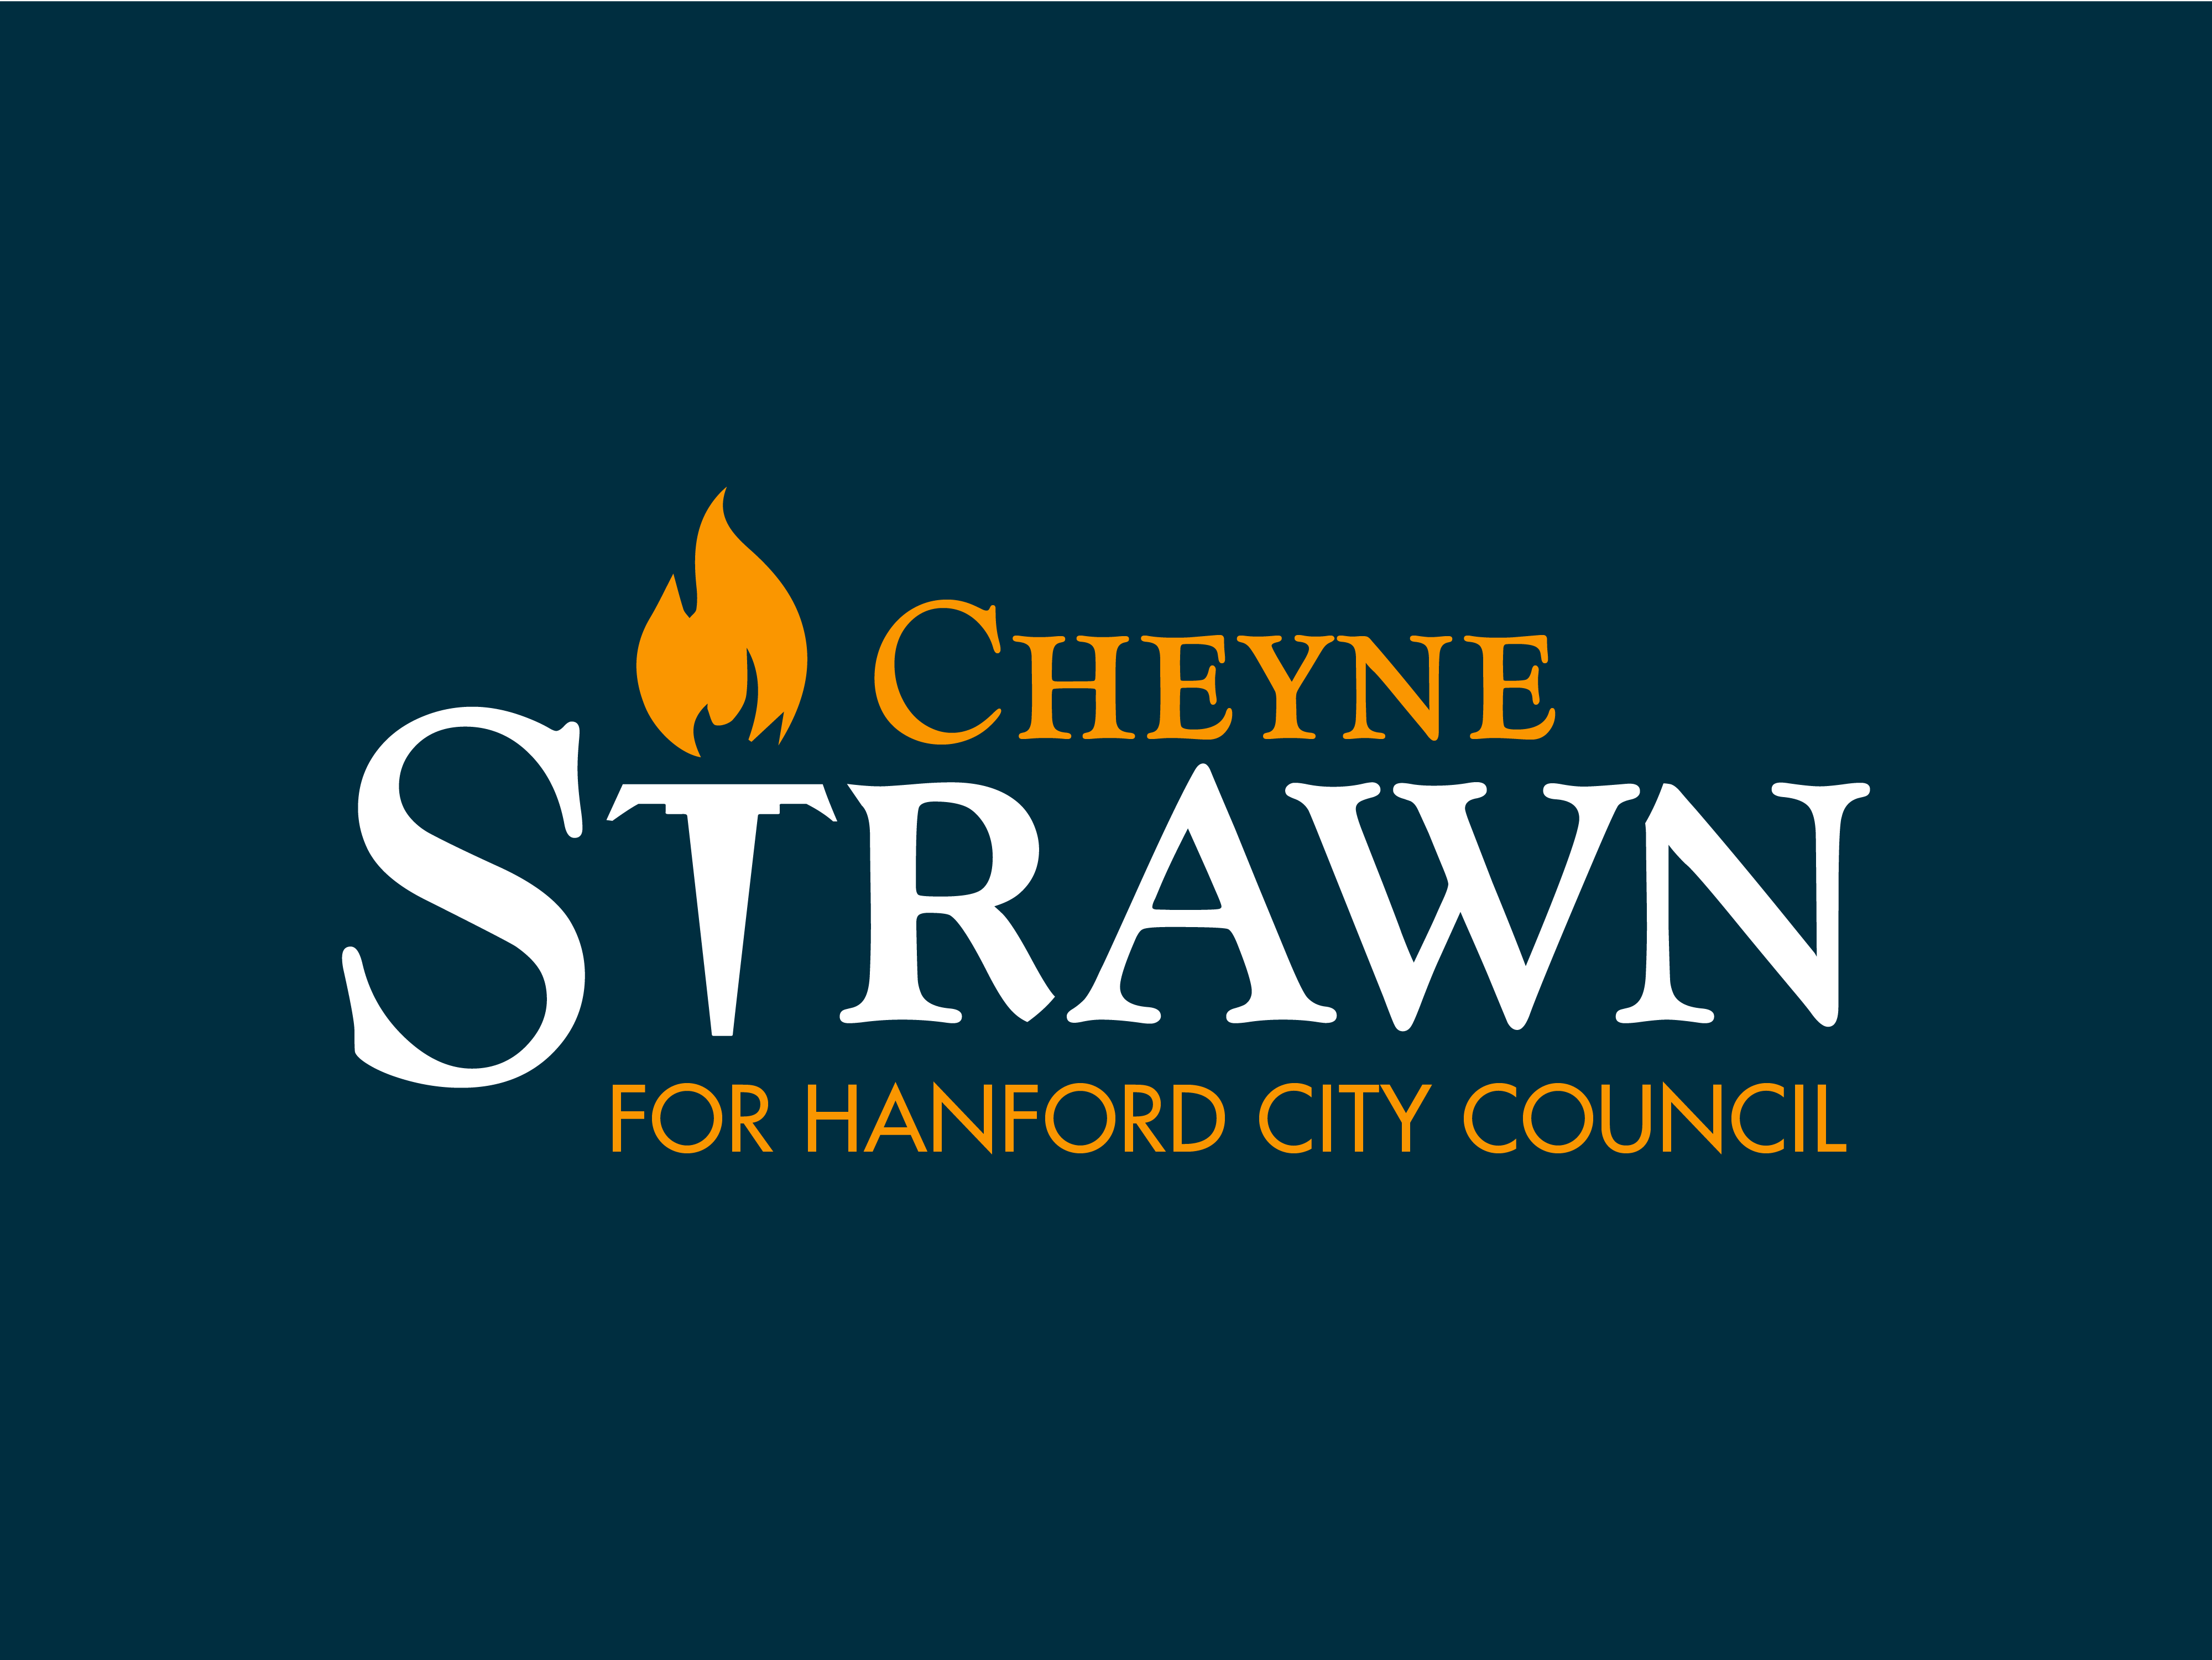 Cheyne Strawn for Hanford City Council 2022 logo